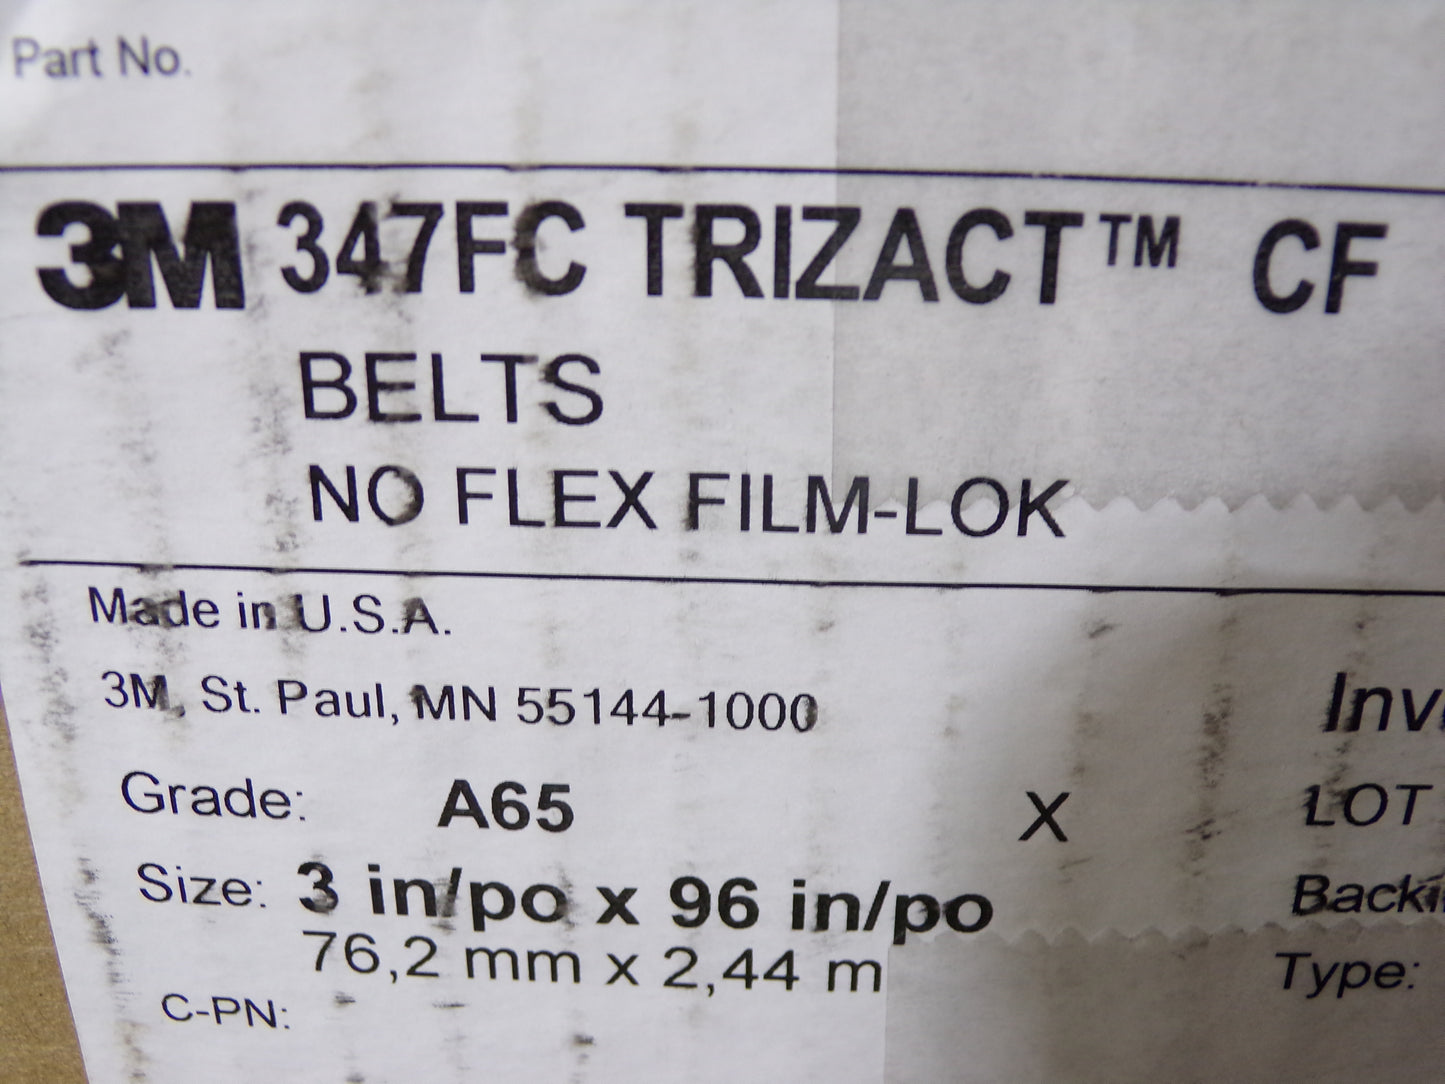 3M™ Trizact™ CF Cloth Belt 347FC, A65 Grade, 3" x 96", Case of 20 (CR00499-WTA12)